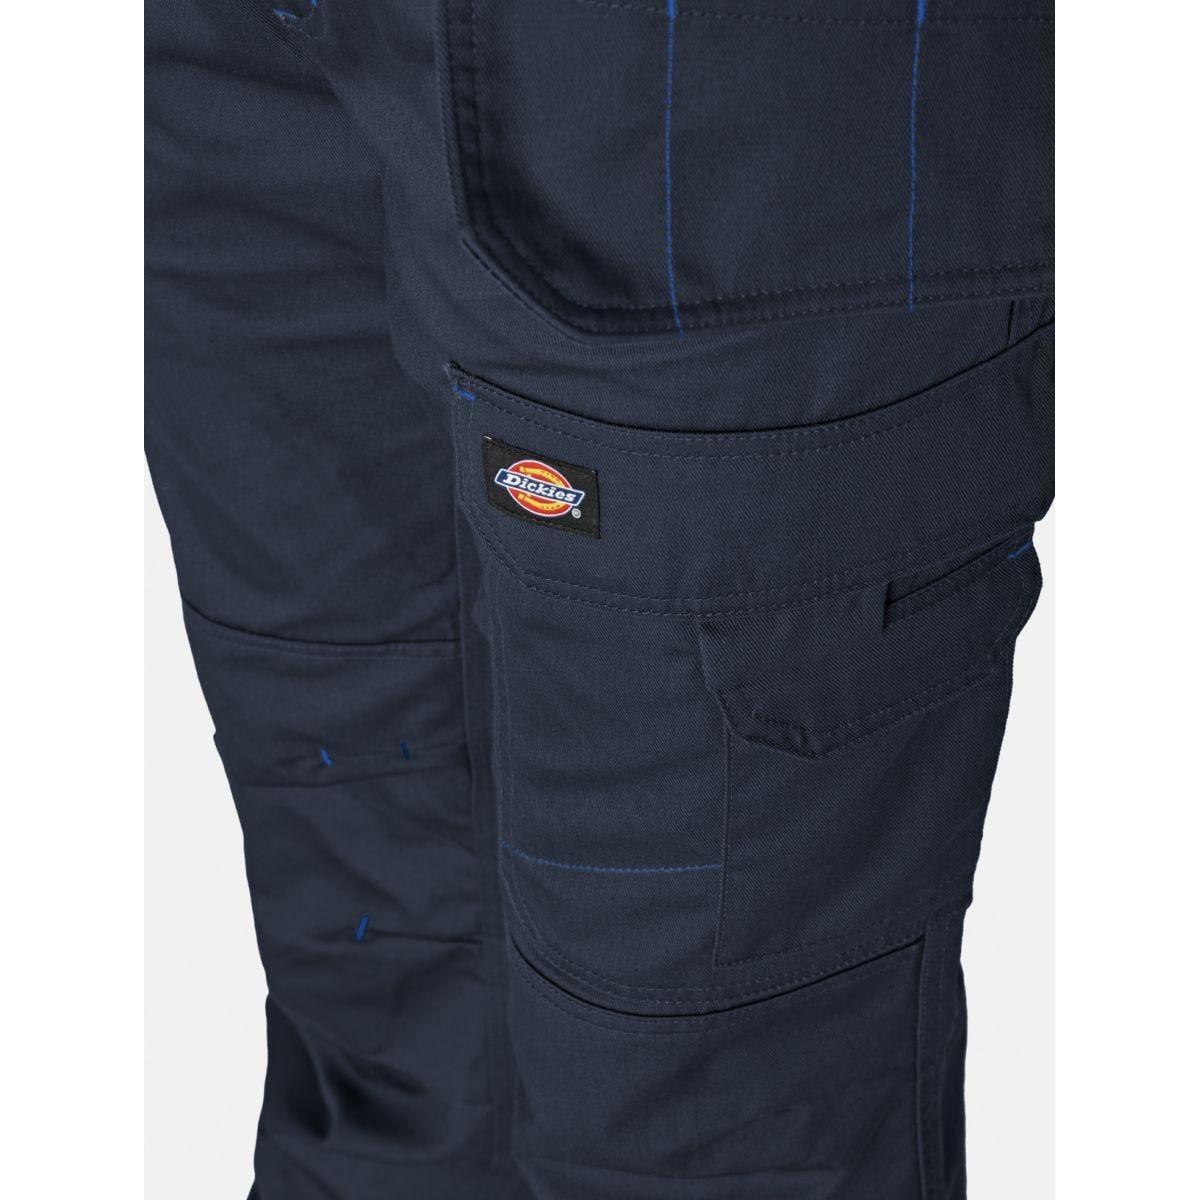 Pantalon Redhawk Pro Bleu marine - Dickies - Taille 38 4